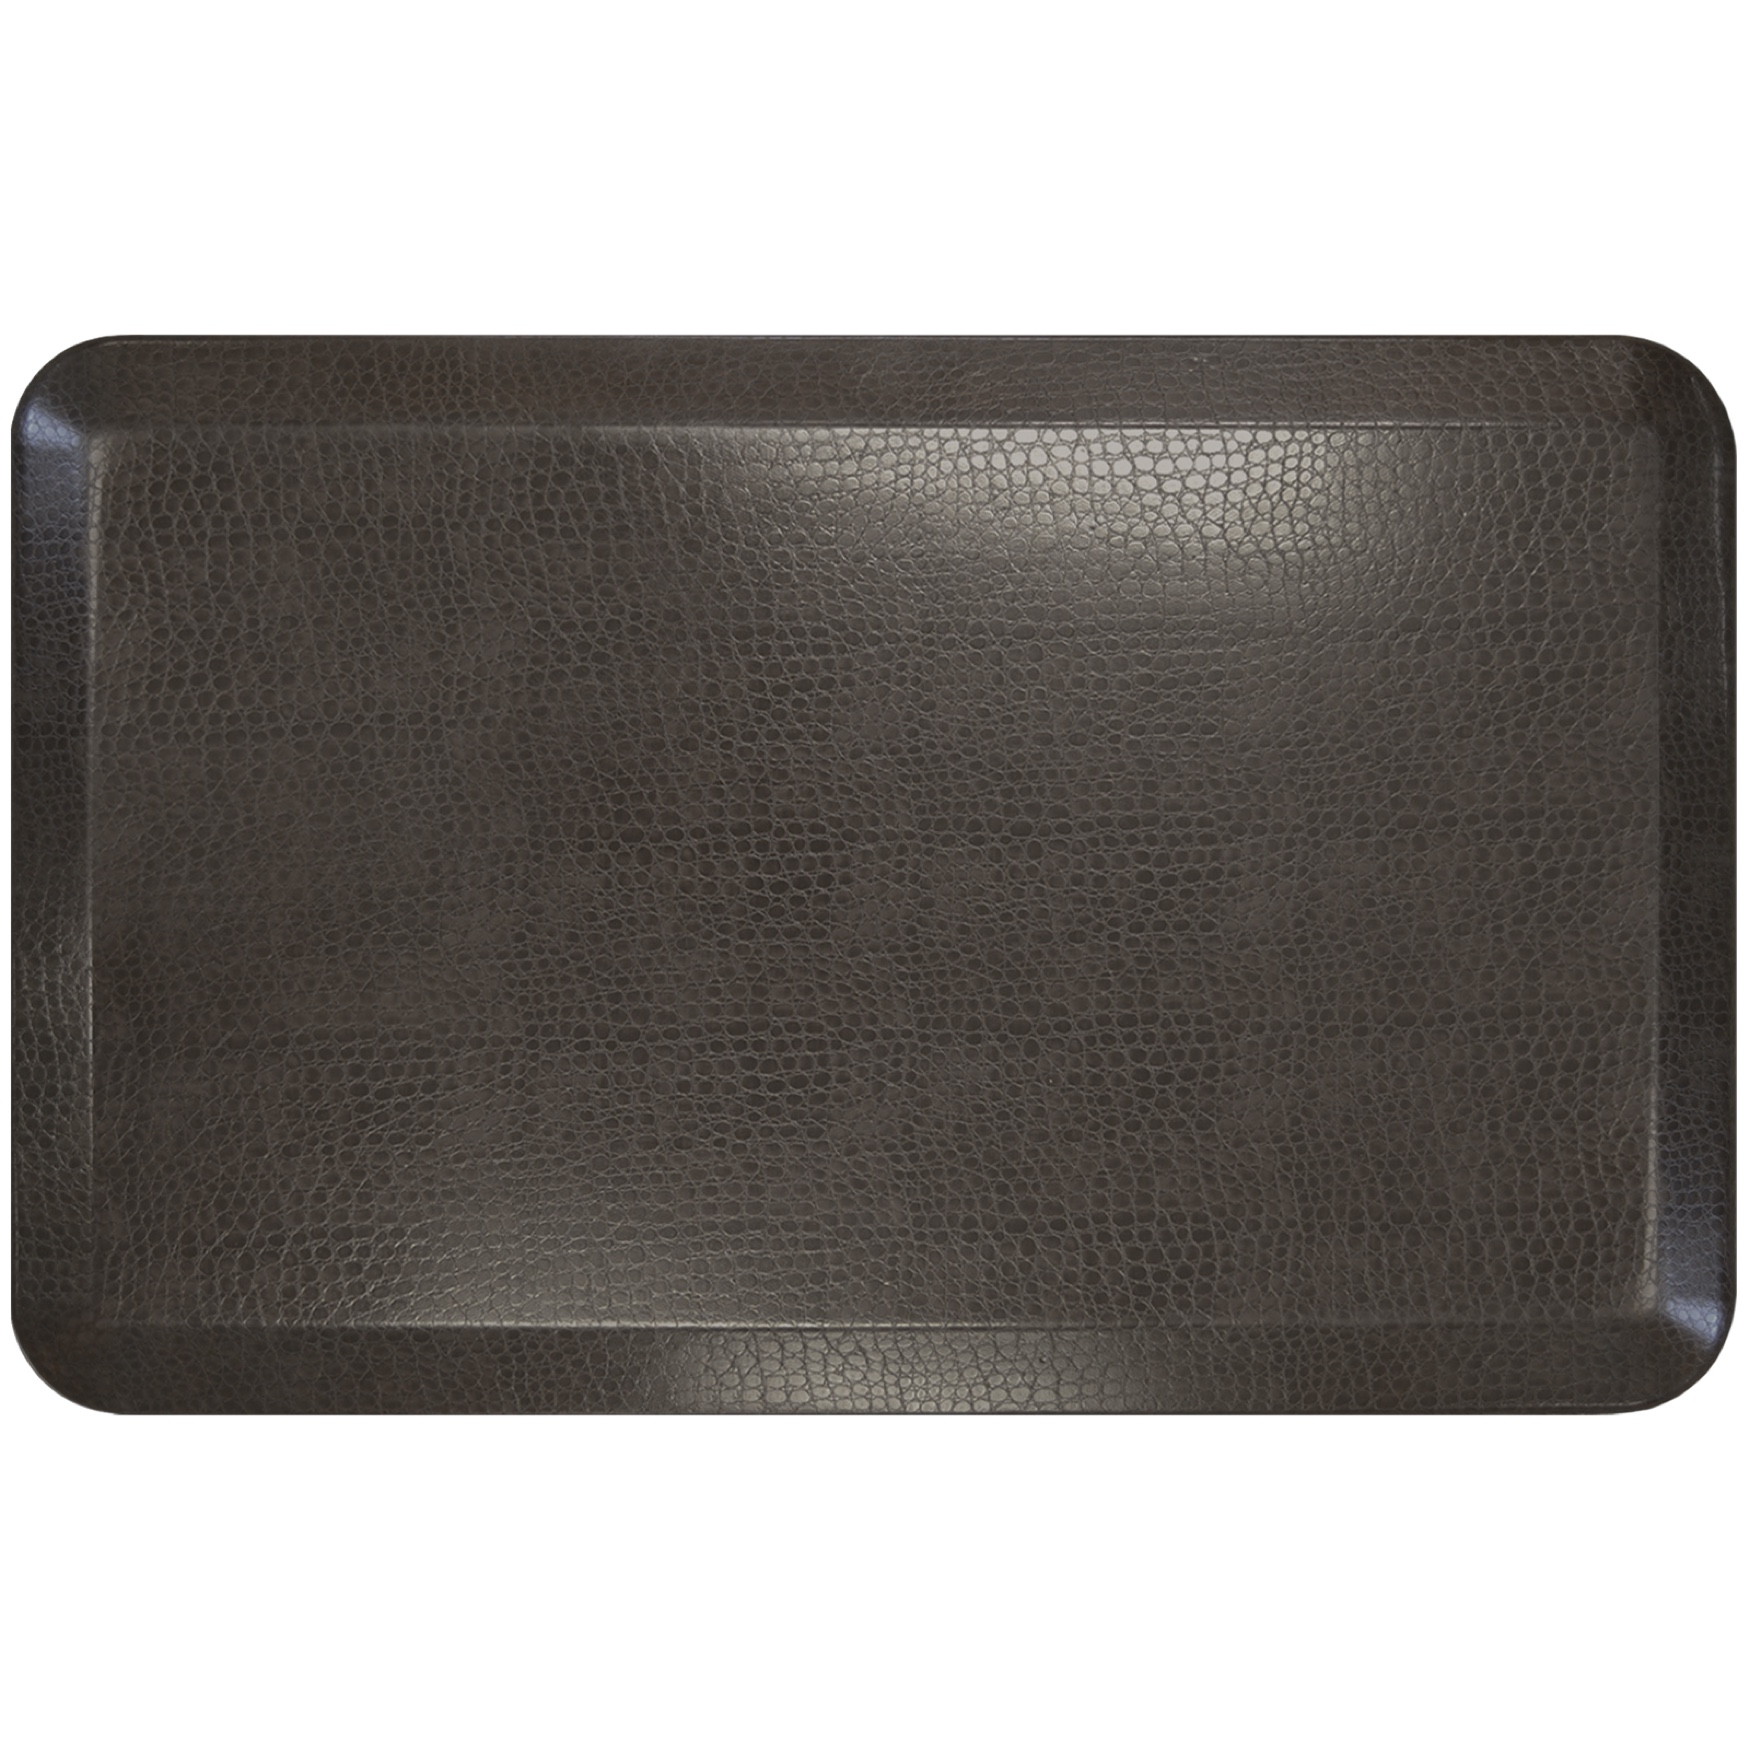 NewLife by GelPro Designer Comfort Kitchen Mat 20x32, ESPRESSO